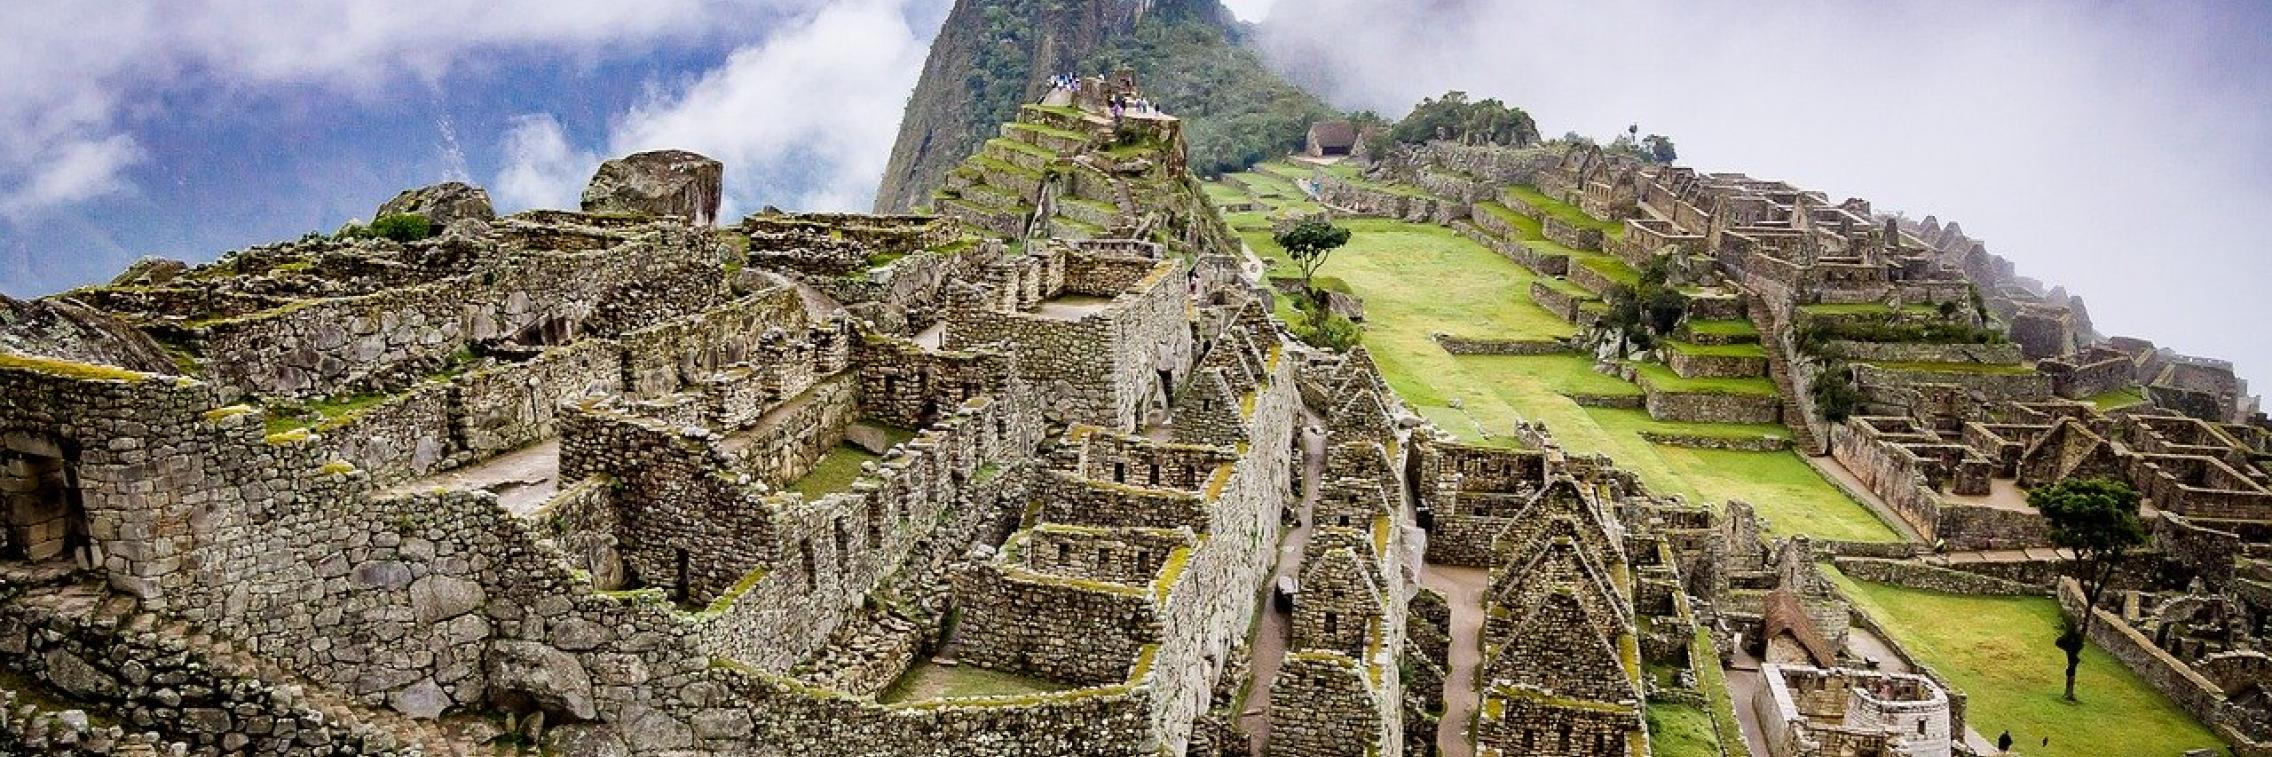 Landscape photo of Machu Picchu ruins